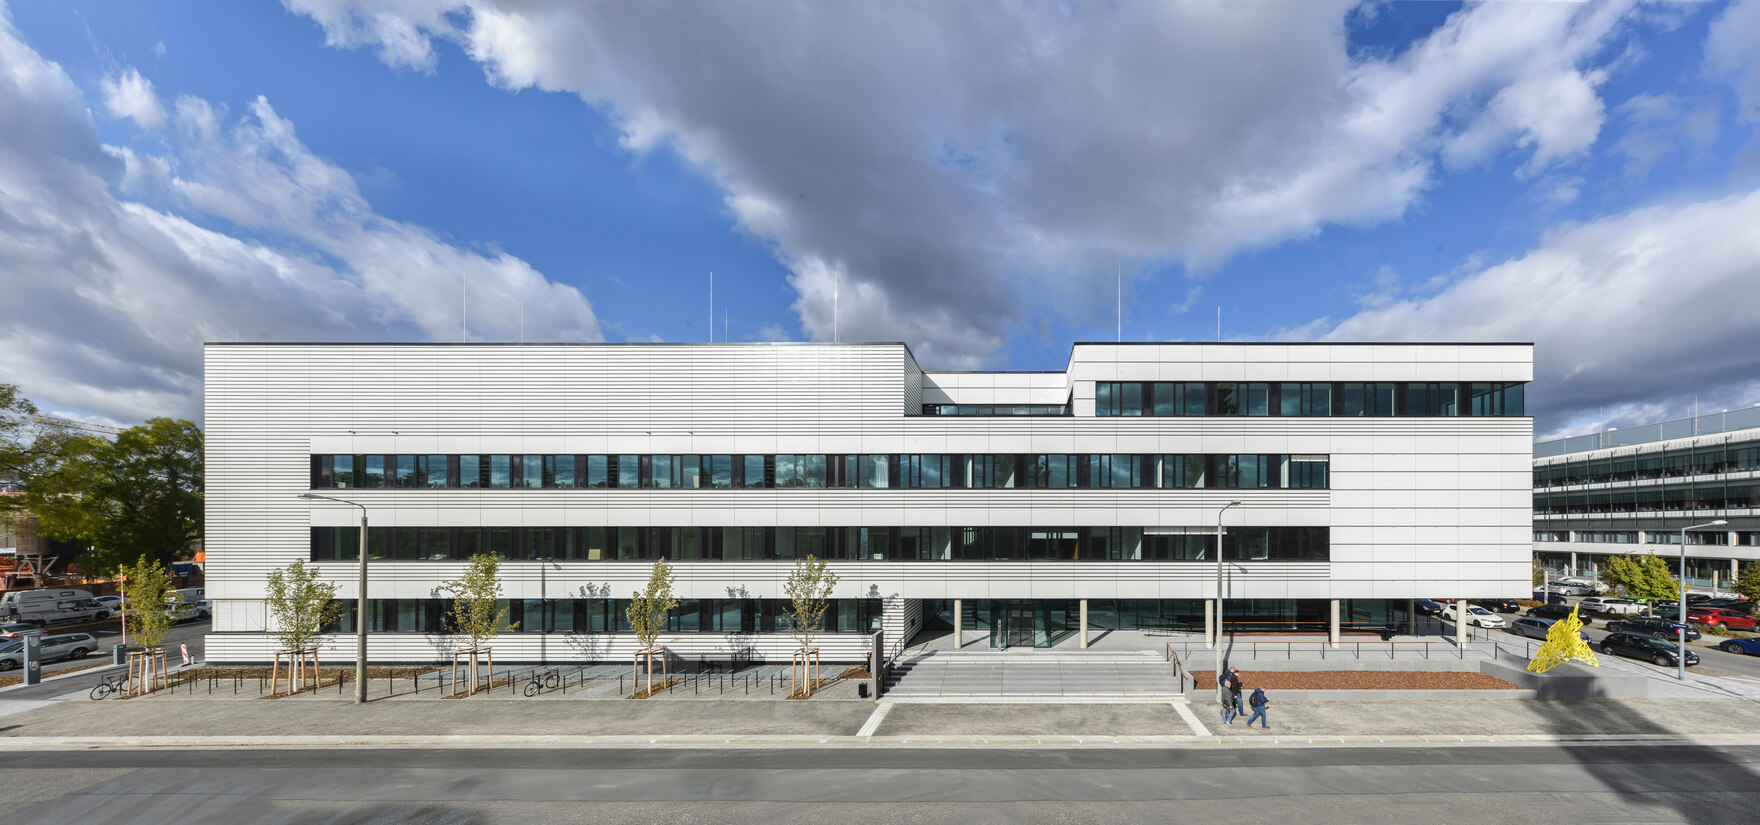 Gesamtansicht eines Forschungsgebäudes mit silberner Fassade.